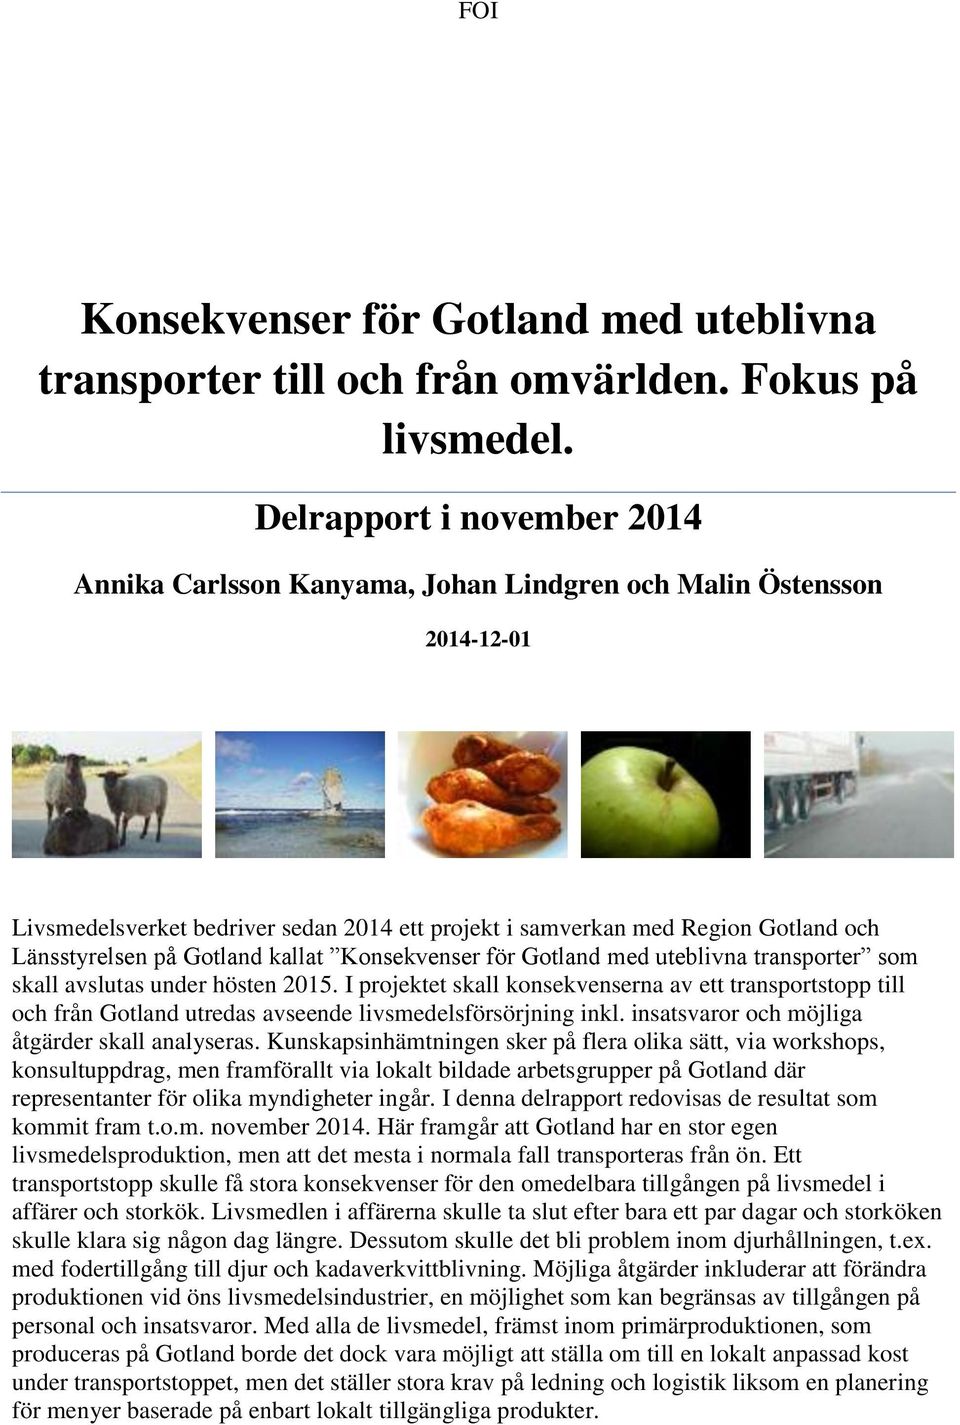 Gotland kallat Konsekvenser för Gotland med uteblivna transporter som skall avslutas under hösten 2015.